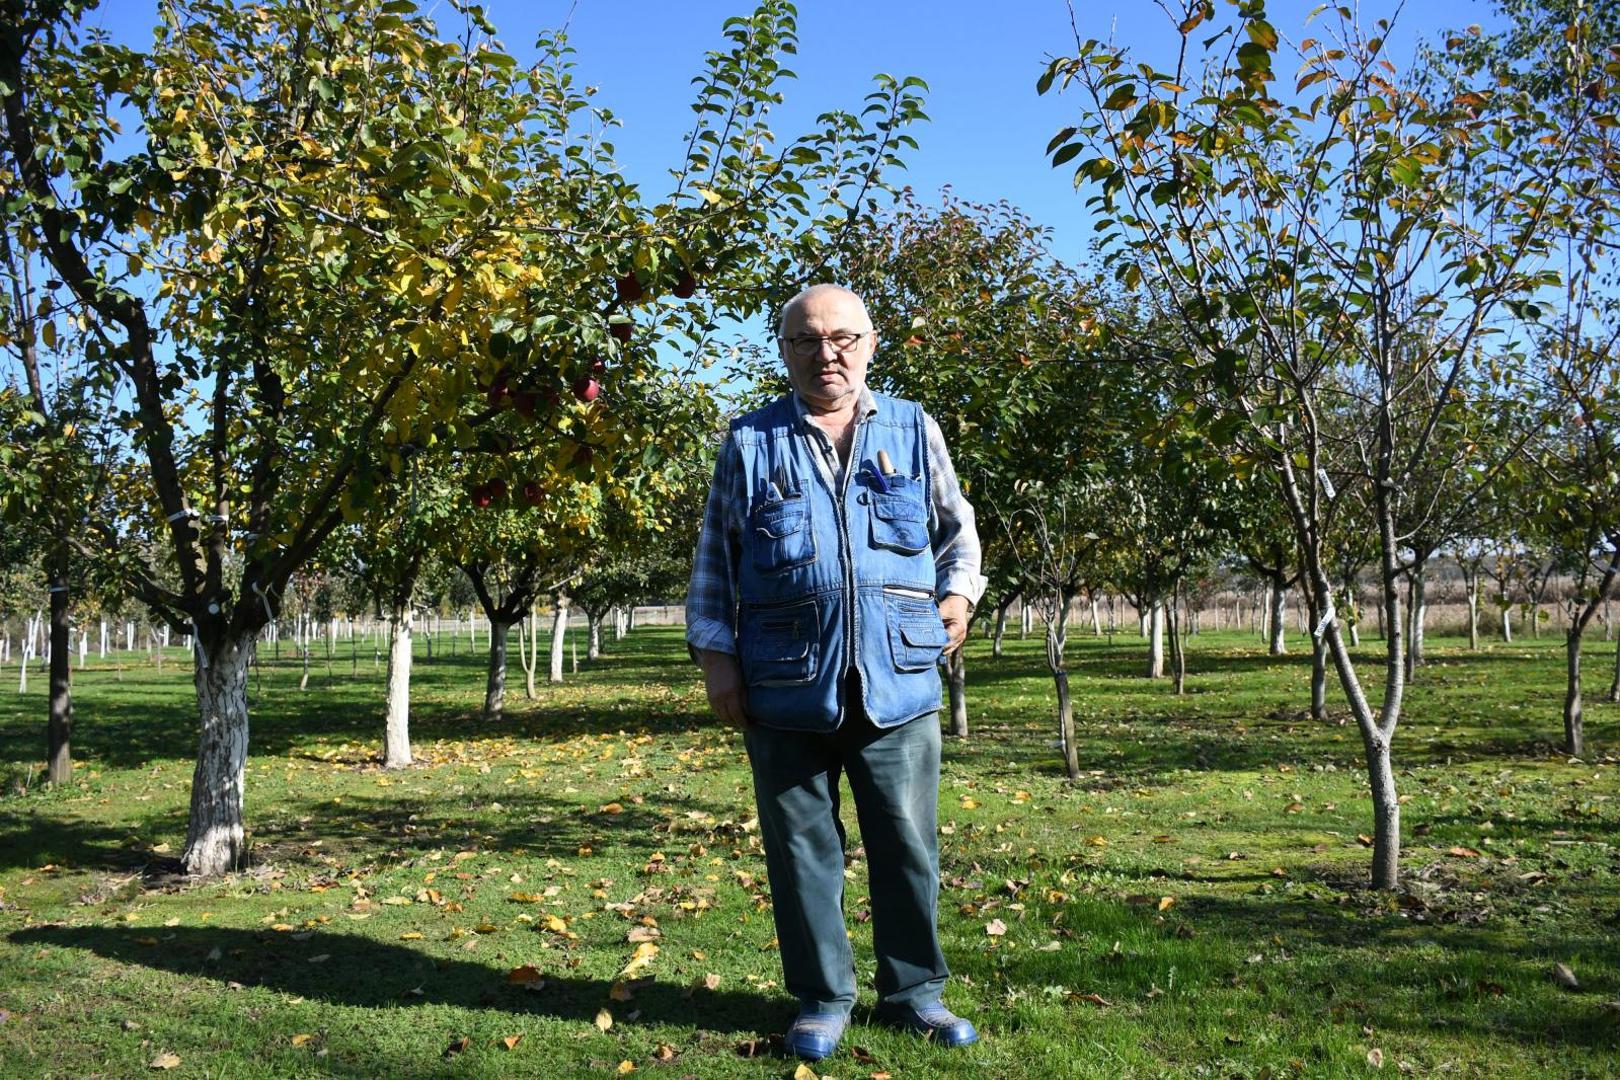 28.10.2020., Cvetkovec - Pavle Kovacic uzgaja i skuplja starinske domace sorte jabuka kojih u svom vocnjaku ima preko 800 vrsta. Najomiljenija jabuka mu je Palci.
Photo:Damir Spehar/PIXSELL